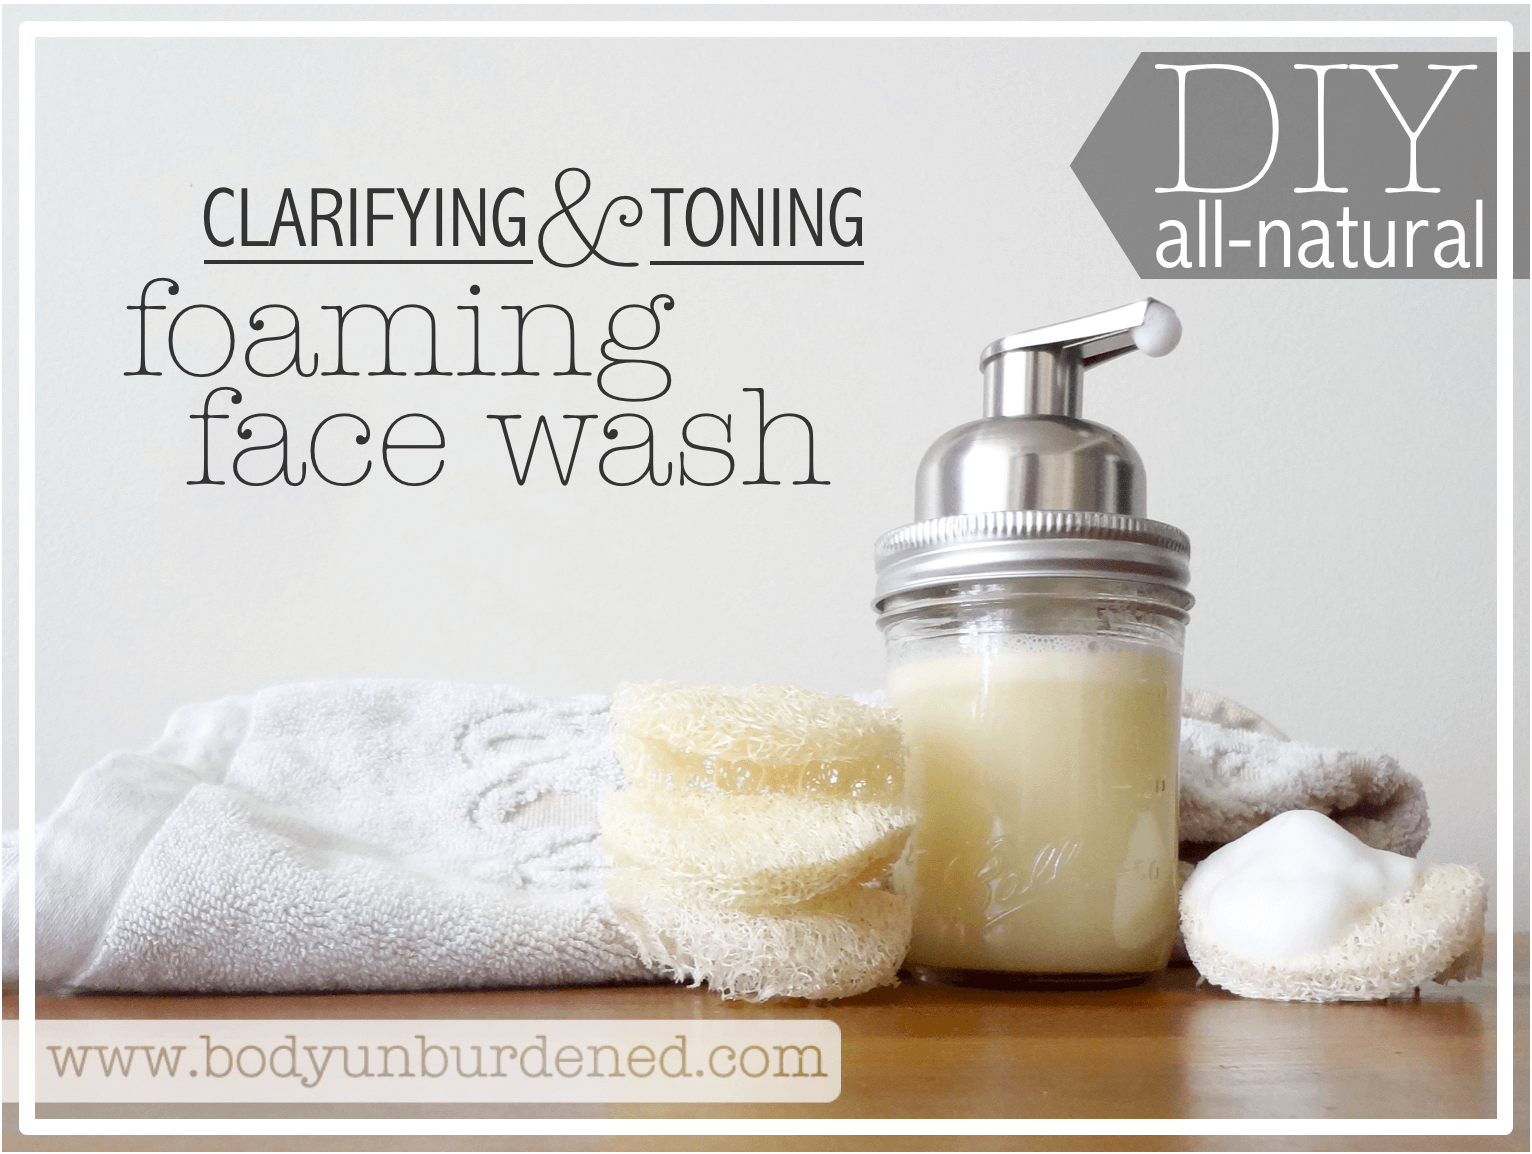 DIY all-natural foaming face wash